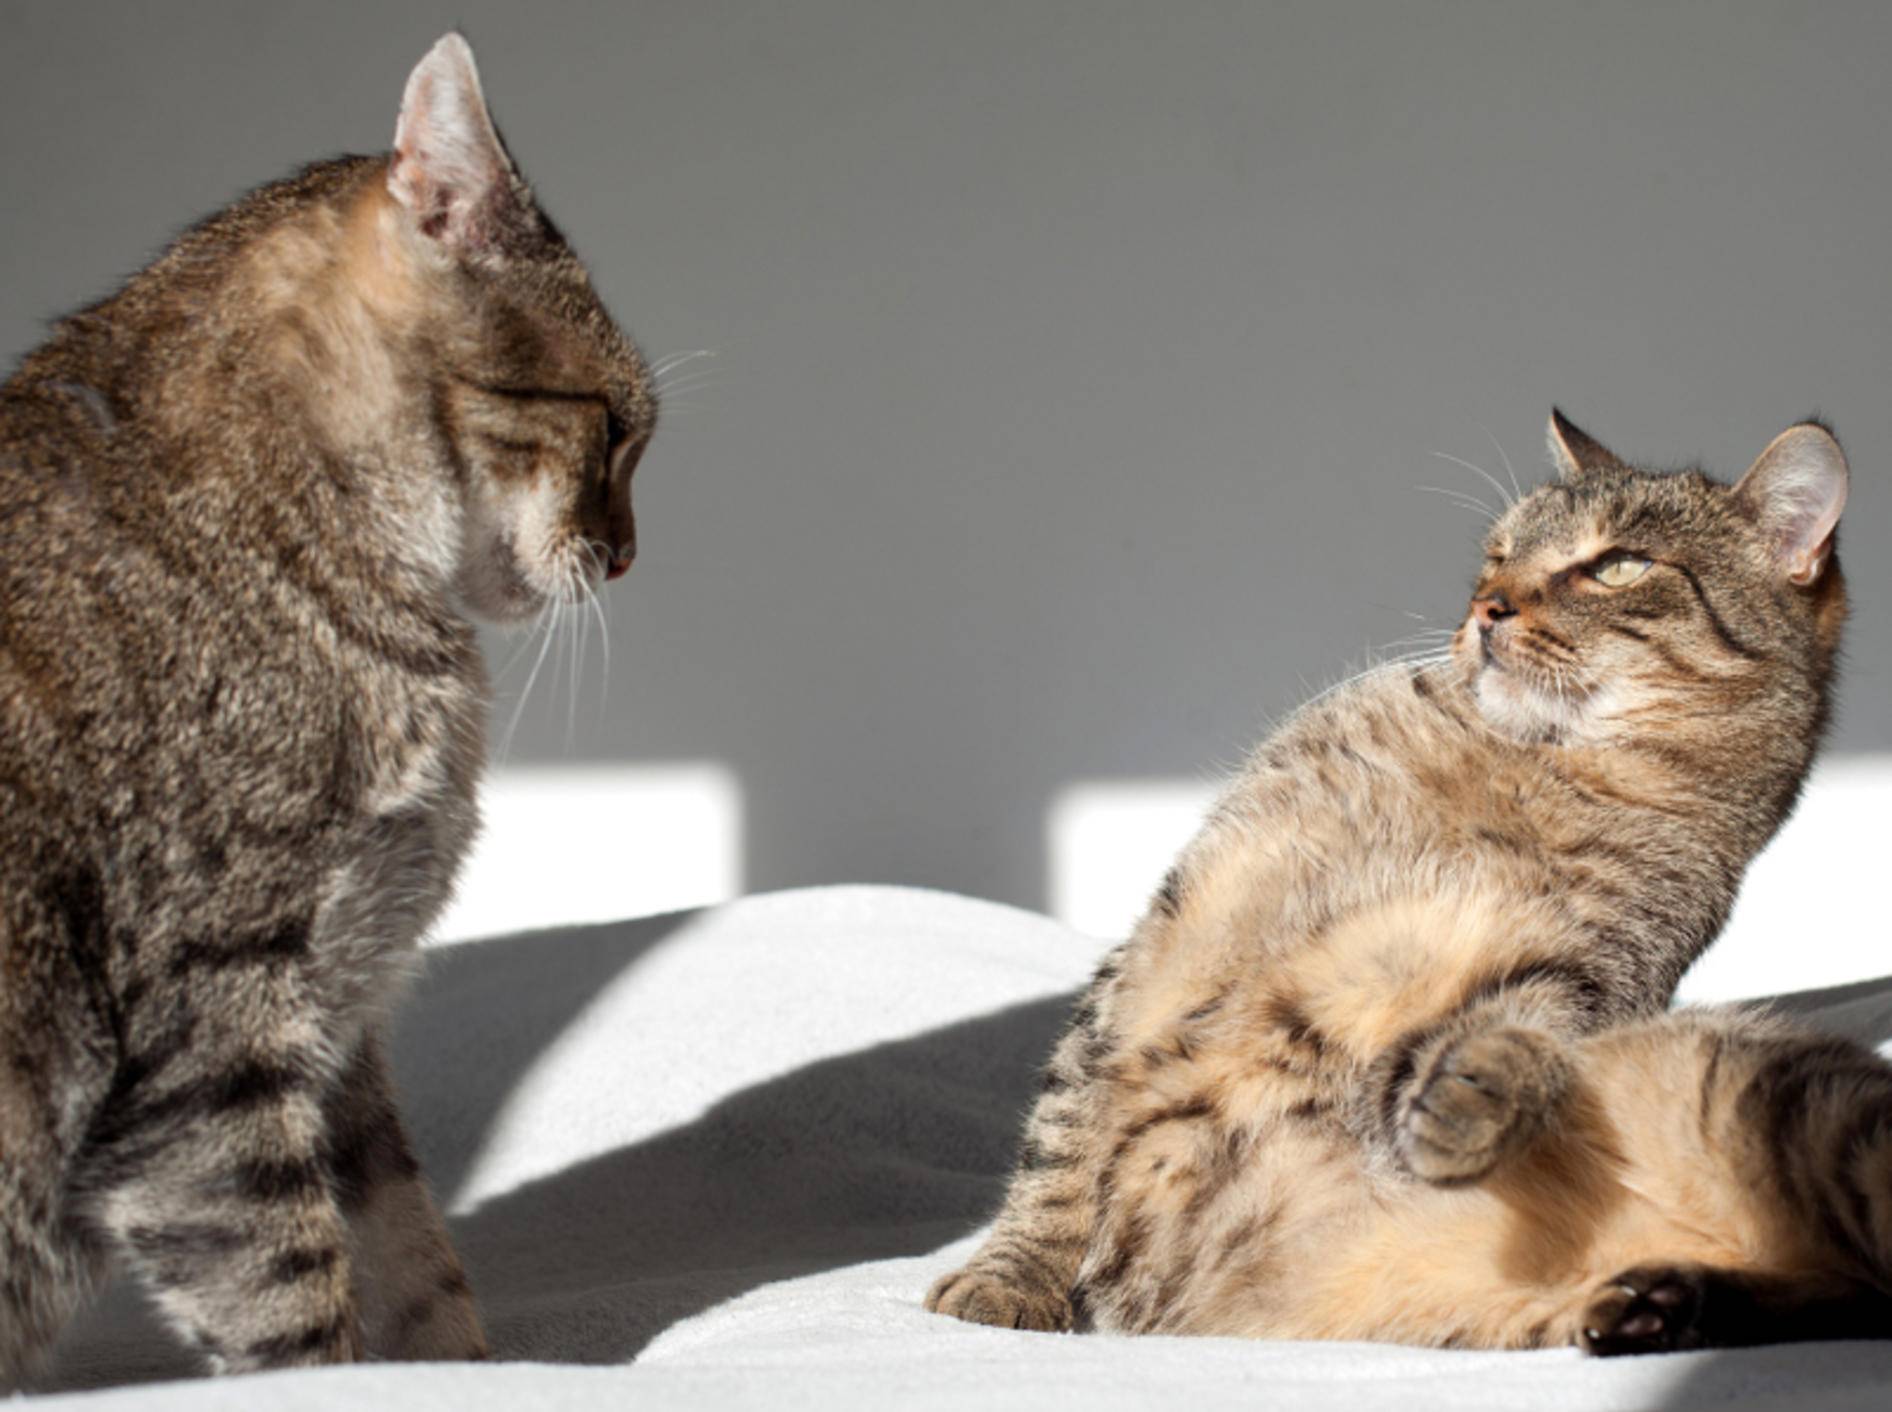 "Hey, heute liege ich hier!" "Ist ja gut, schnauz mich doch nicht so an!" – Meist lösen Katzen Konflikte von selbst – Shutterstock / PAKULA PIOTR